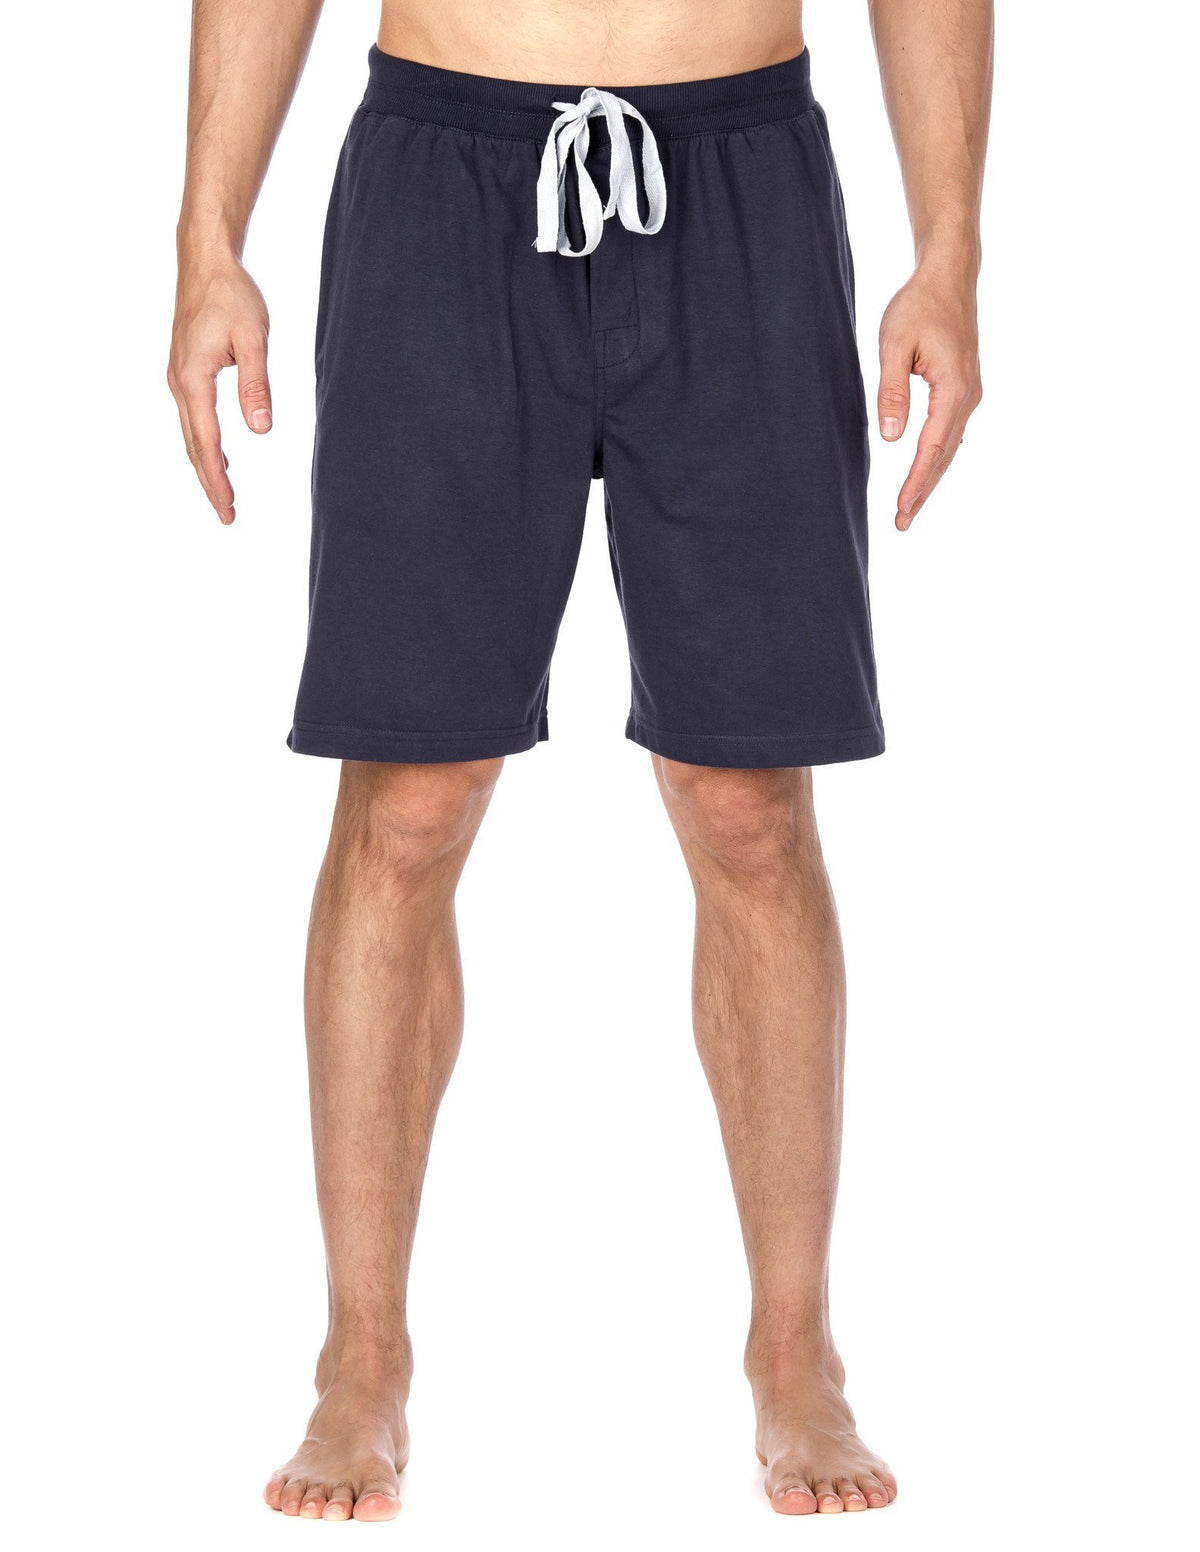 Men's Premium Knit Lounge/Sleep Shorts - Navy